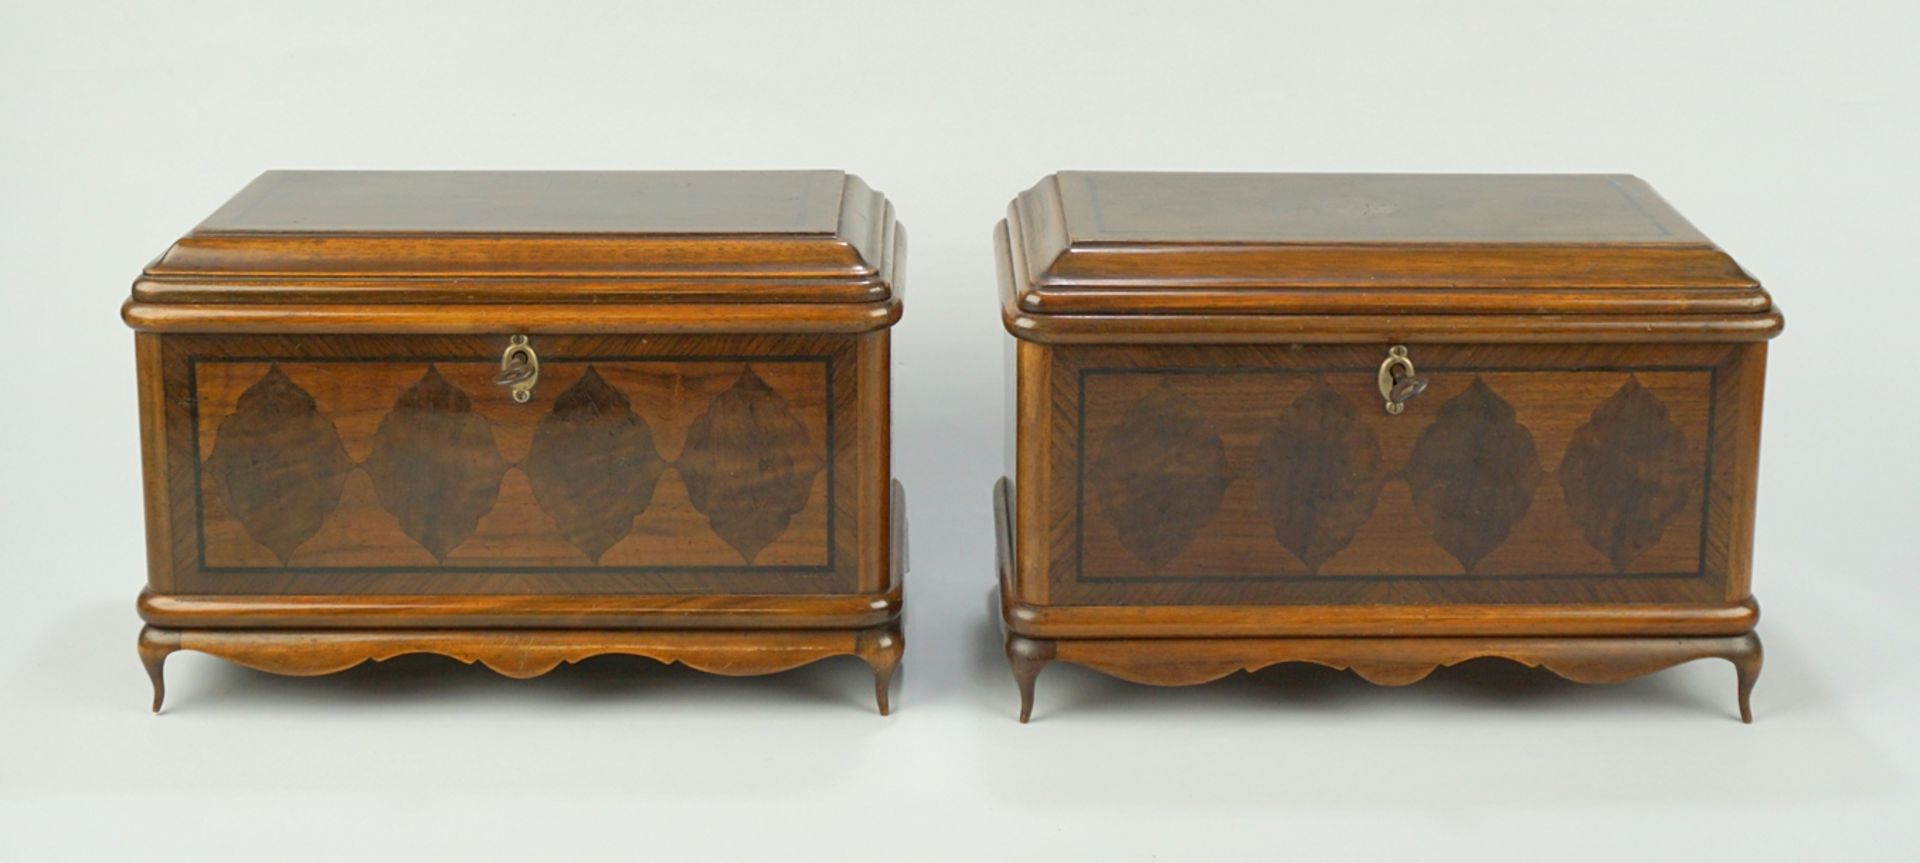 Paar Nähkästchen mit Intarsien, Tischlerarbeit, um 1920